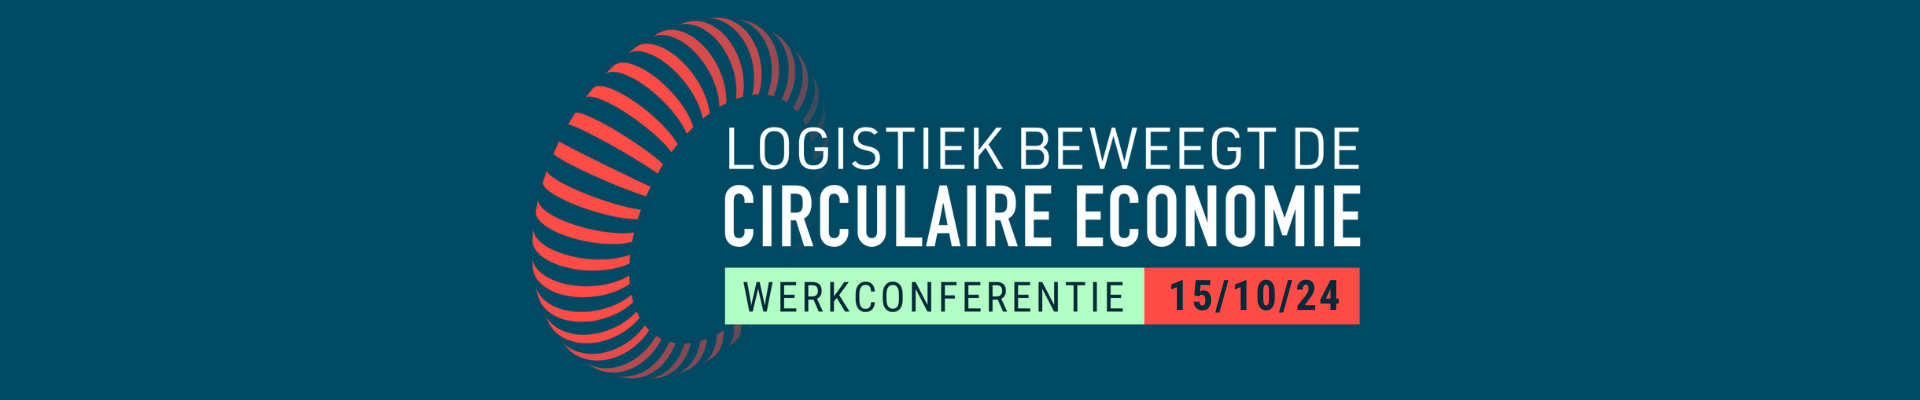 Conferentie Logistiek Beweegt de Circulaire Economie 2024